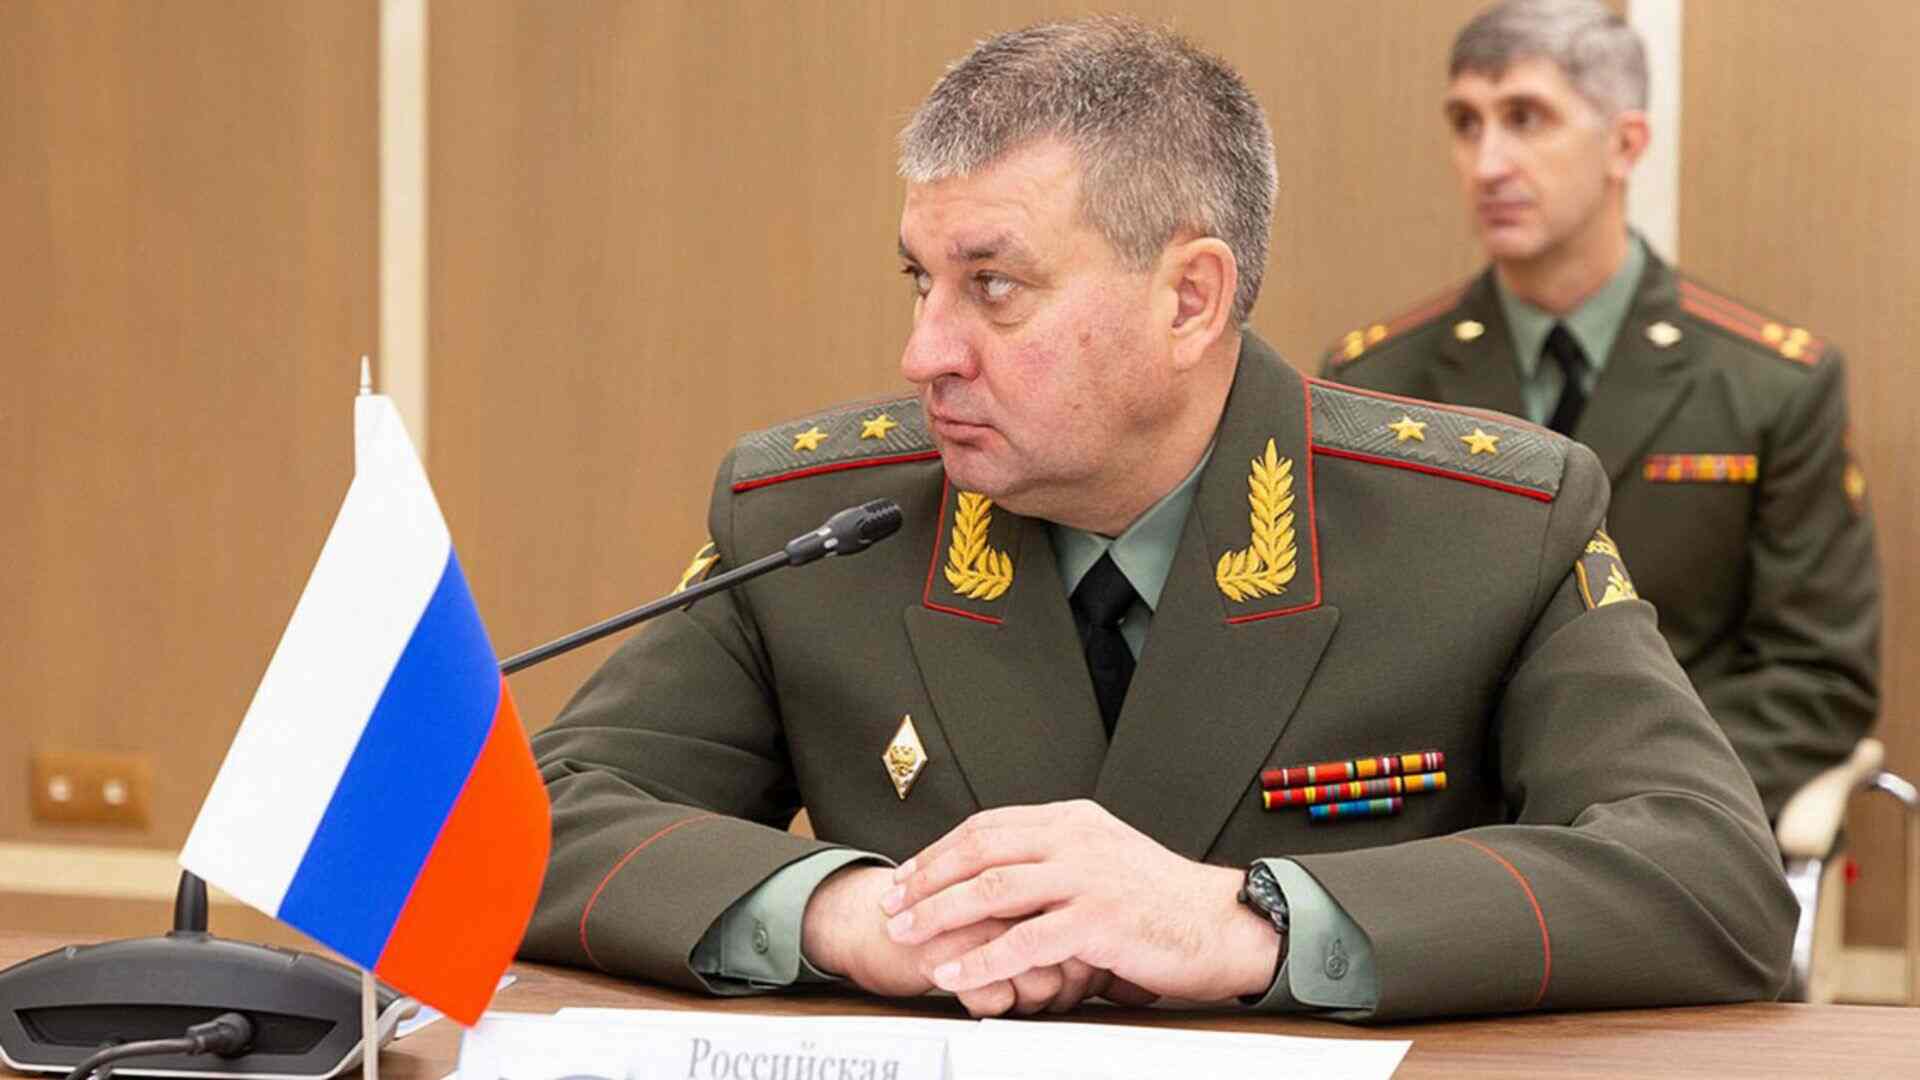 Lieutenant-General Vadim Shamarin